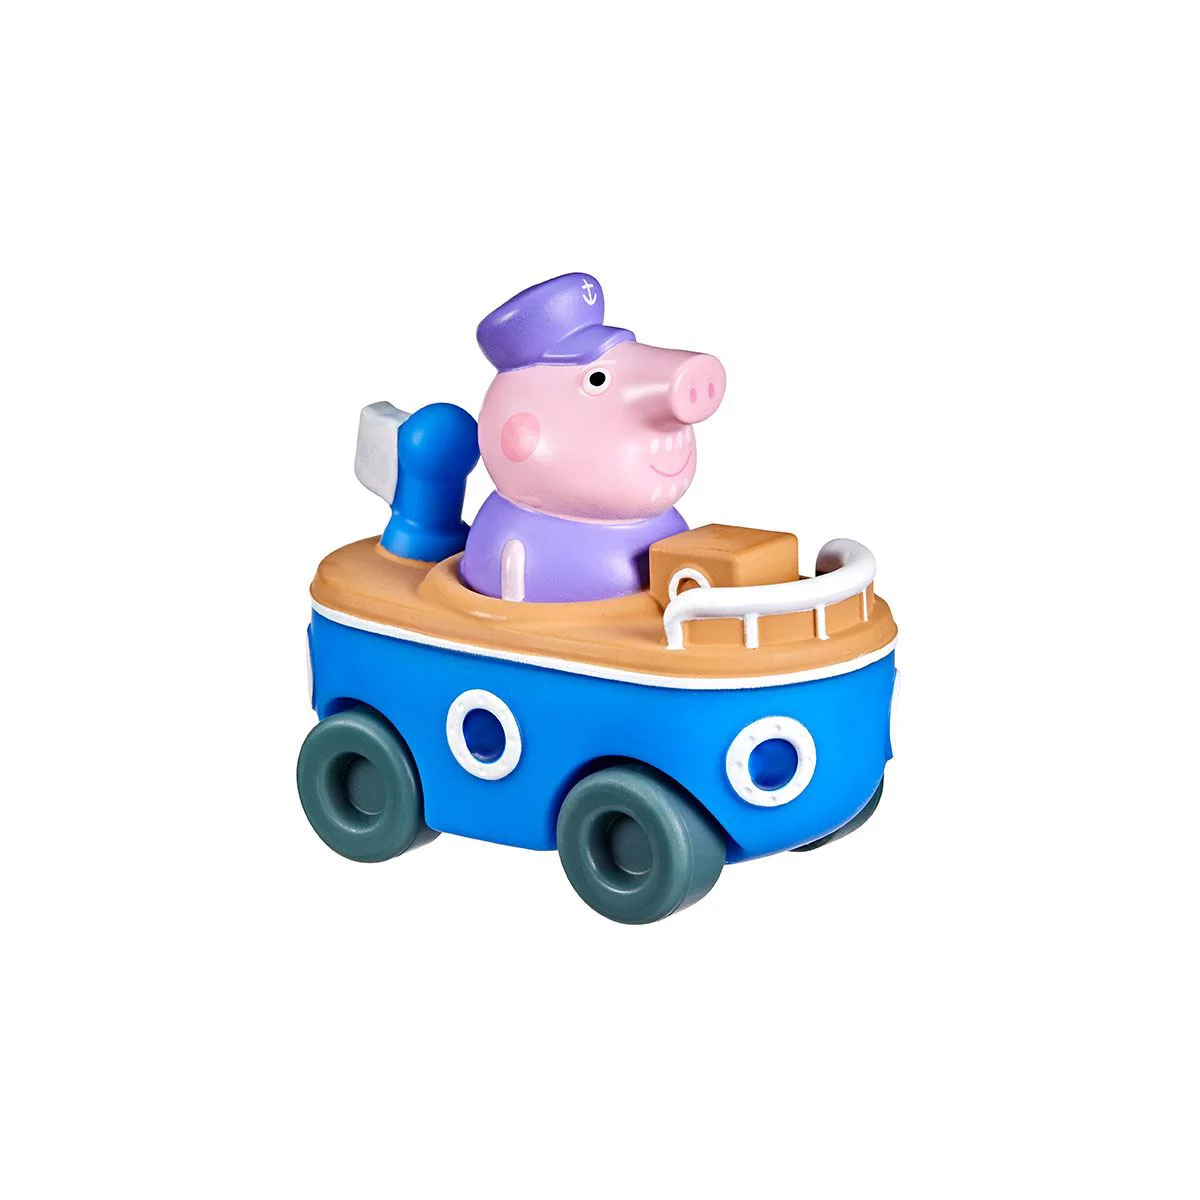 Figurina Peppa Pig Bunicul Peppei pe barca